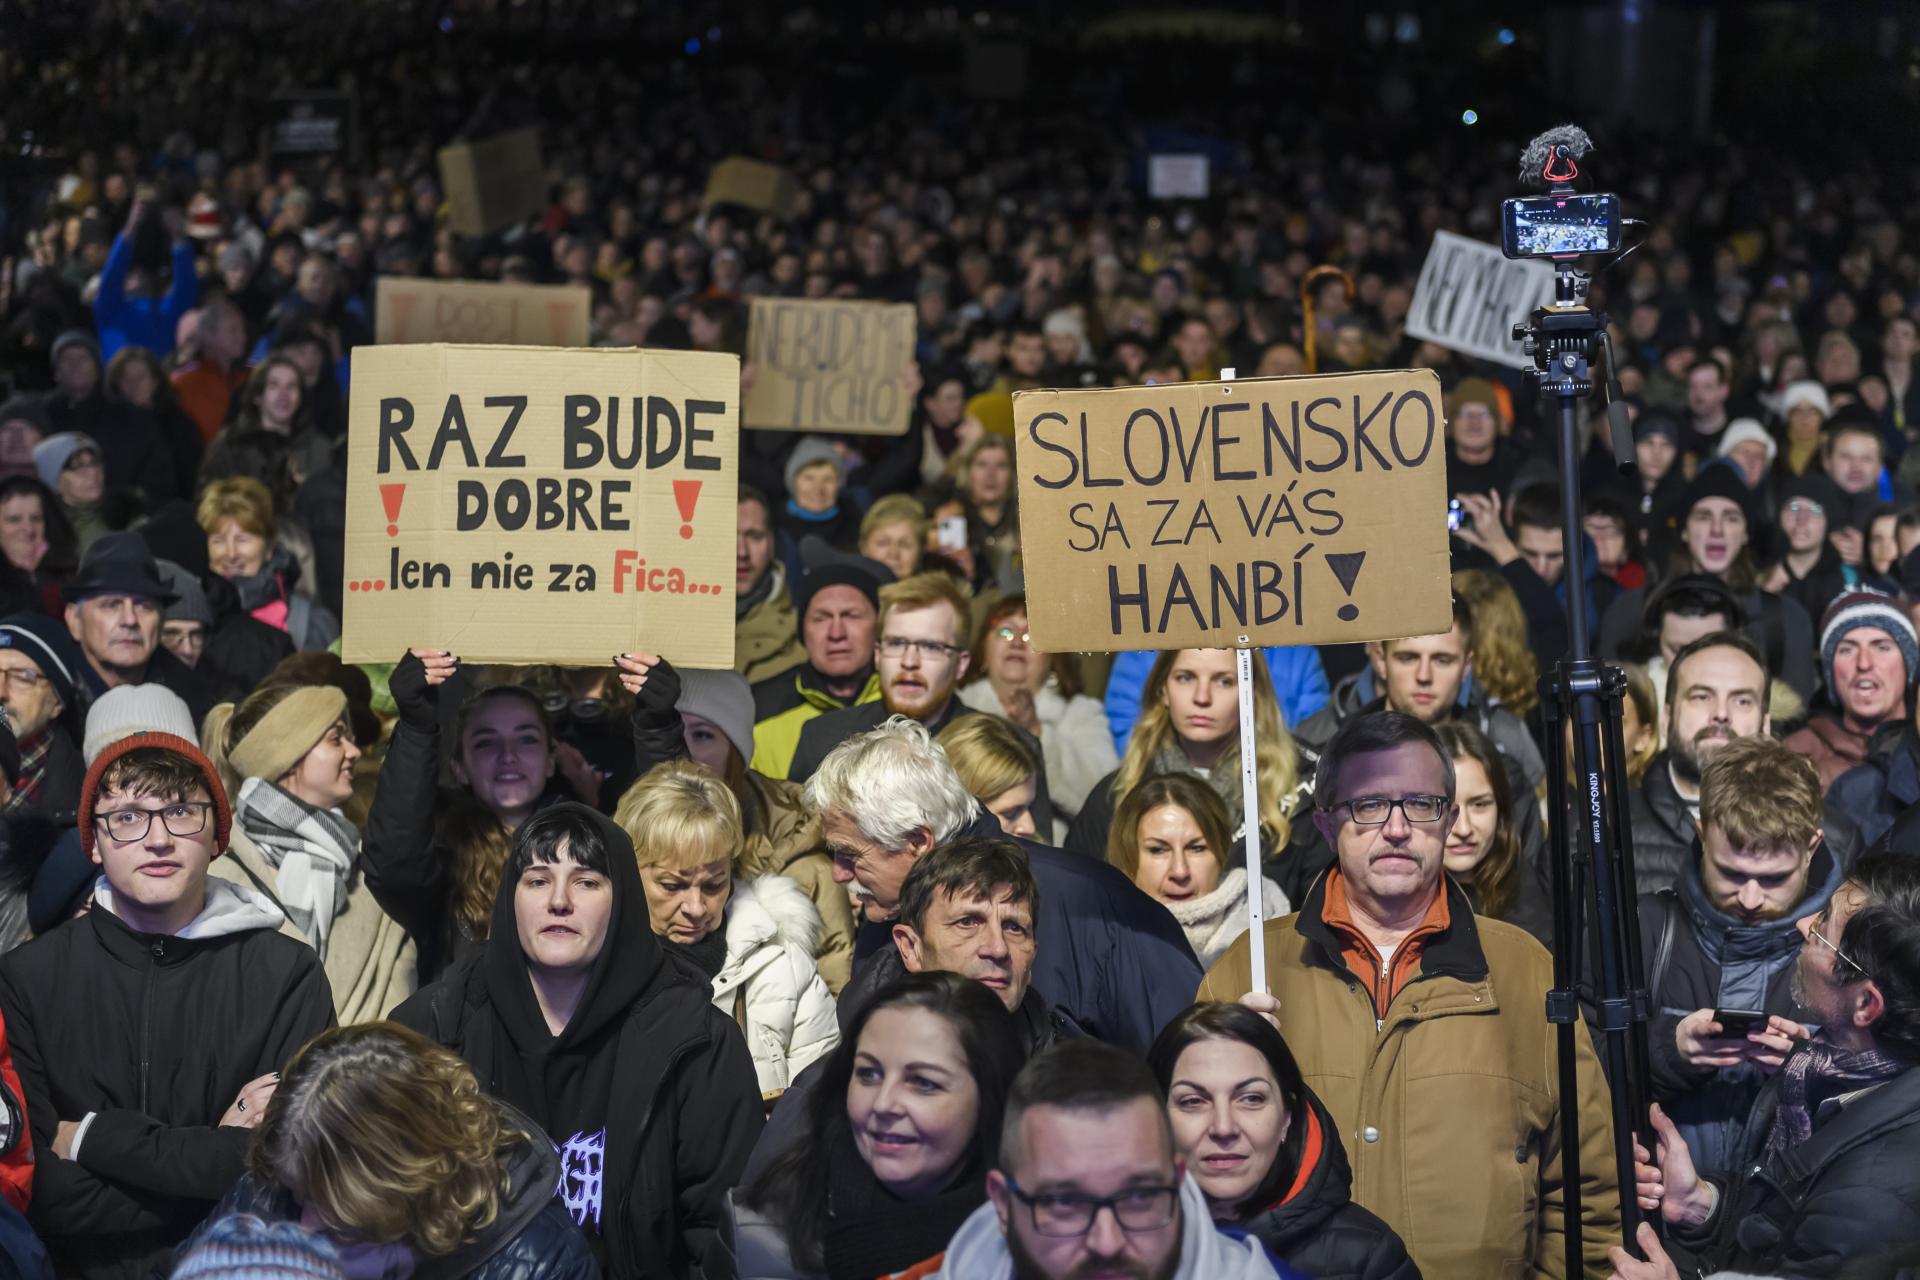 Slováci opäť vyšli do ulíc na protivládne zhromaždenia, ktoré zvolali tri opozičné strany. Prišli tisíce ľudí